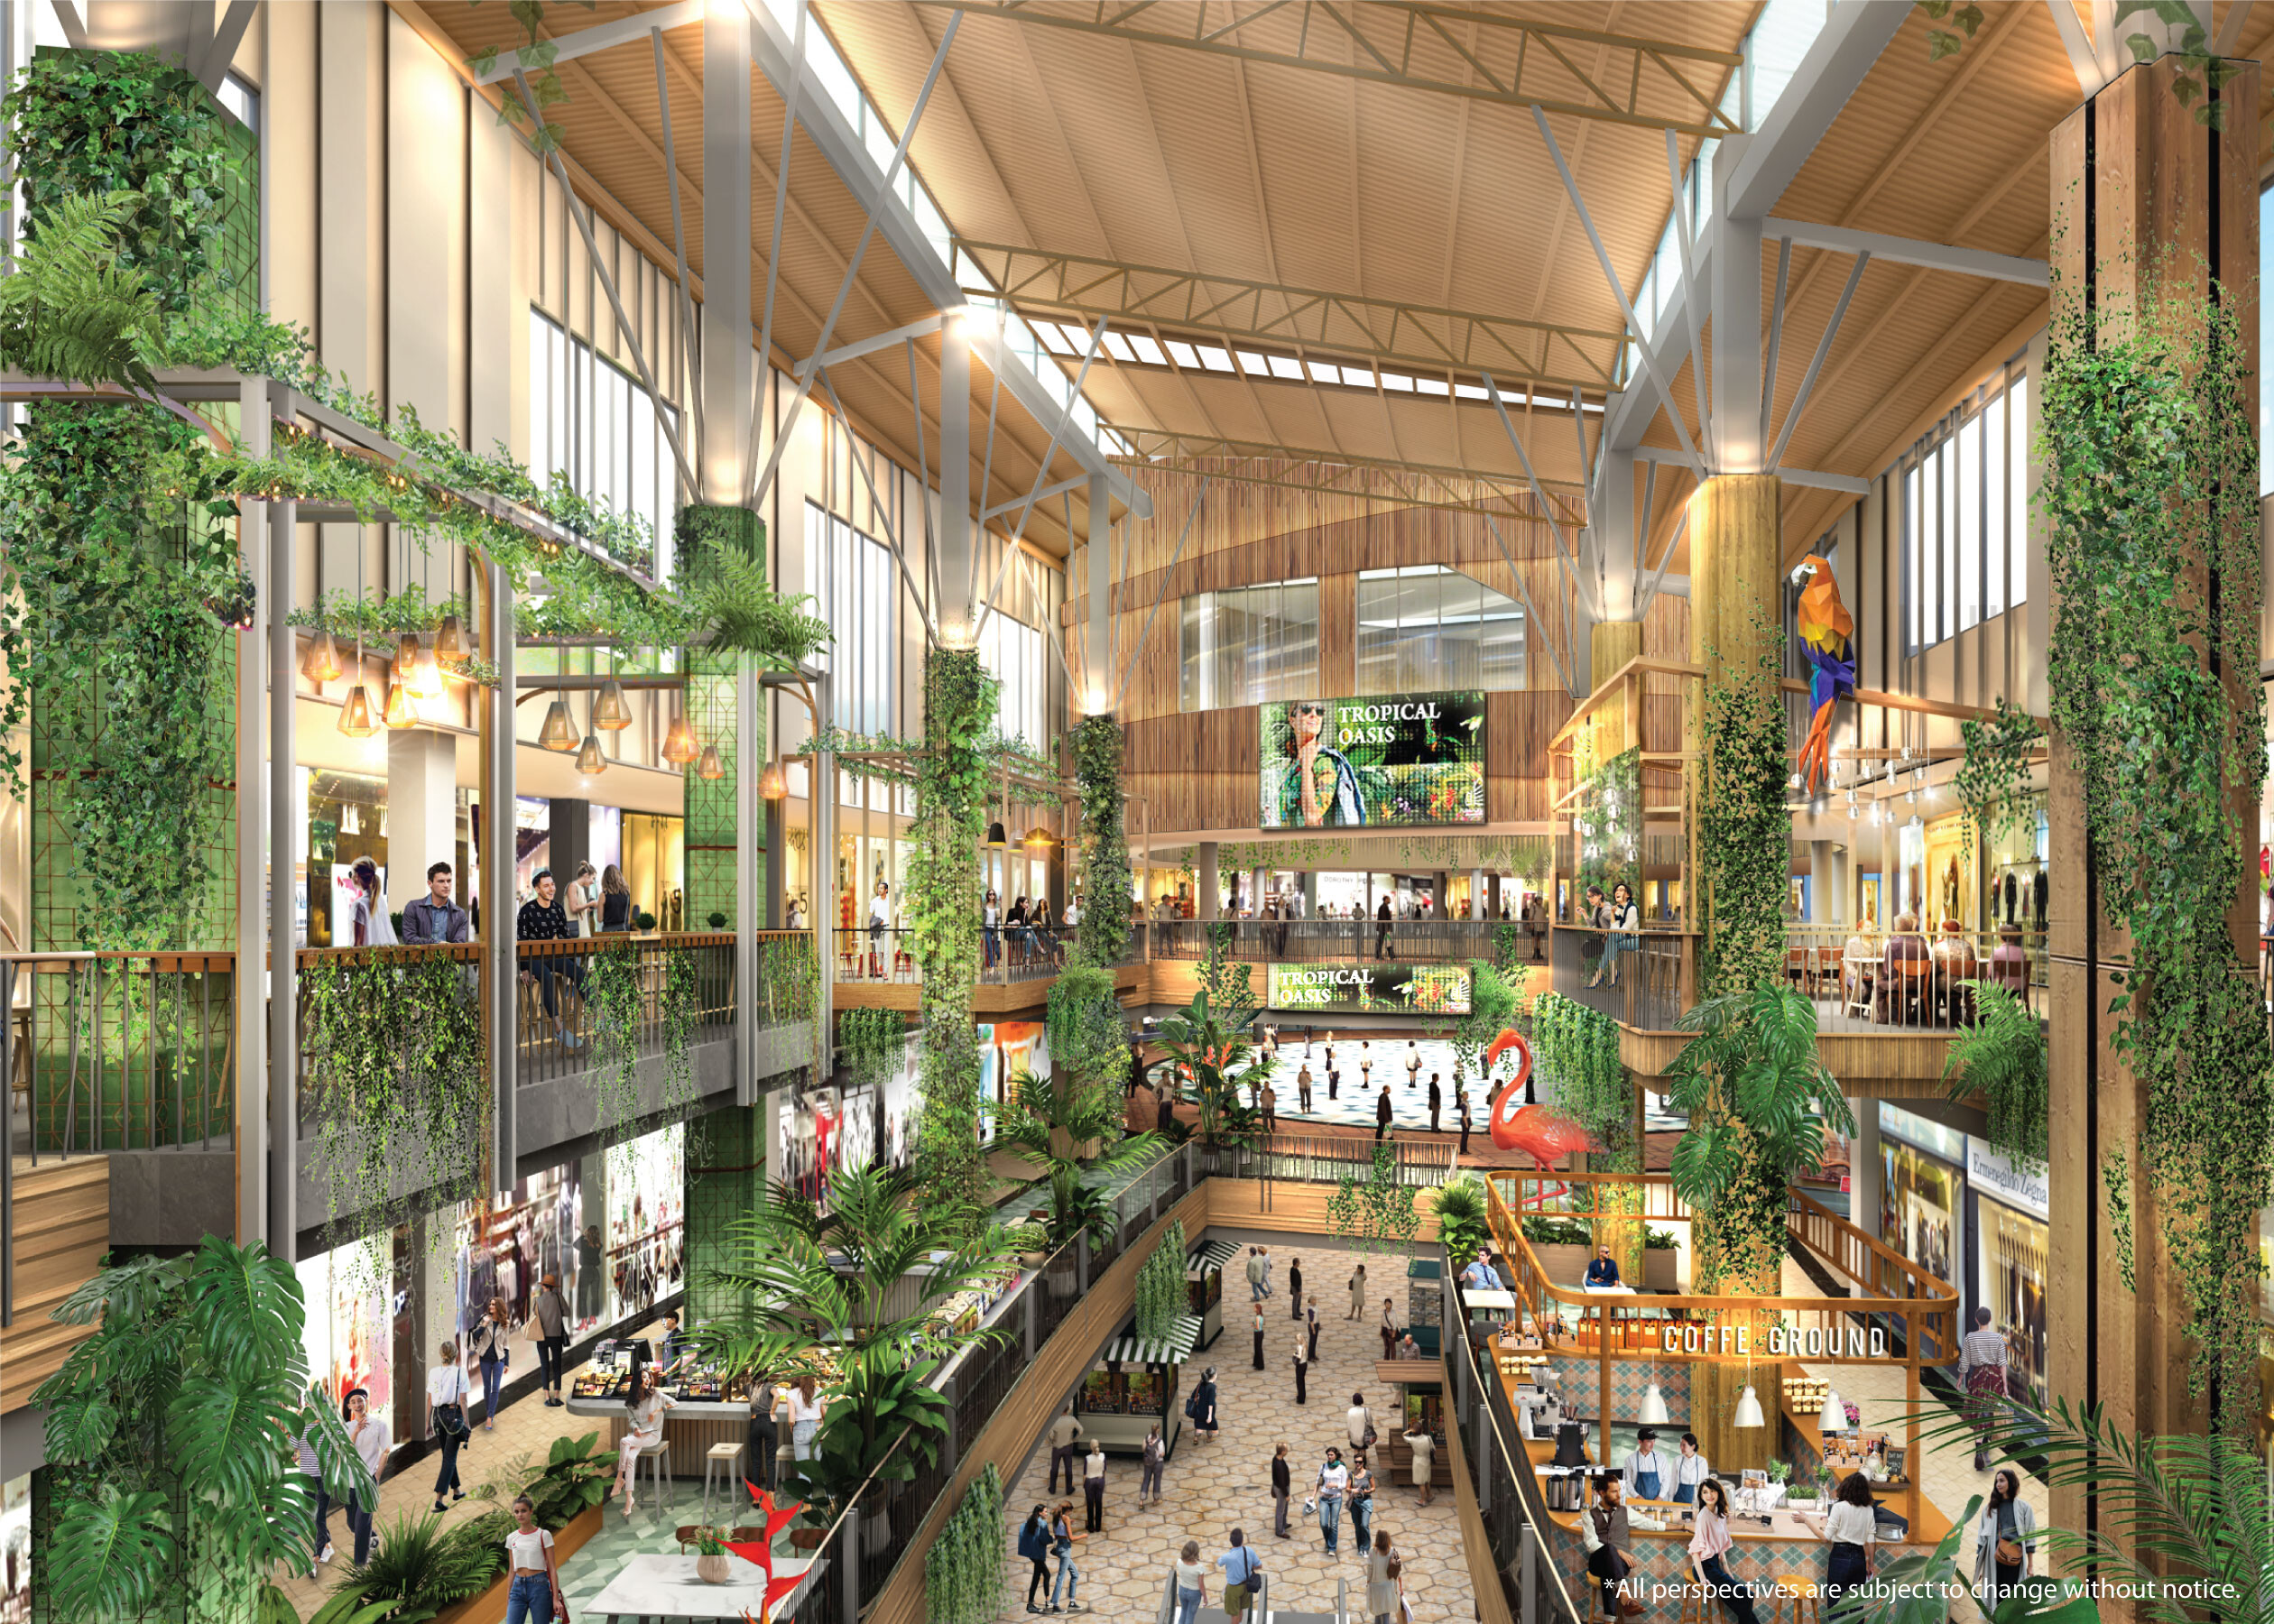 "จังซีลอน" ปรับโฉมครั้งใหญ่ในรอบ 15 ปี ชูดีไซน์คอนเซ็ปต์ "โอเอซิส ป่าตอง" เสริมจุดแข็ง "Shopping Paradise" พร้อมสร้าง "New Lifestyle & Attractions" ต้อนรับการกลับมาของนักท่องเที่ยวจากทั่วโลก